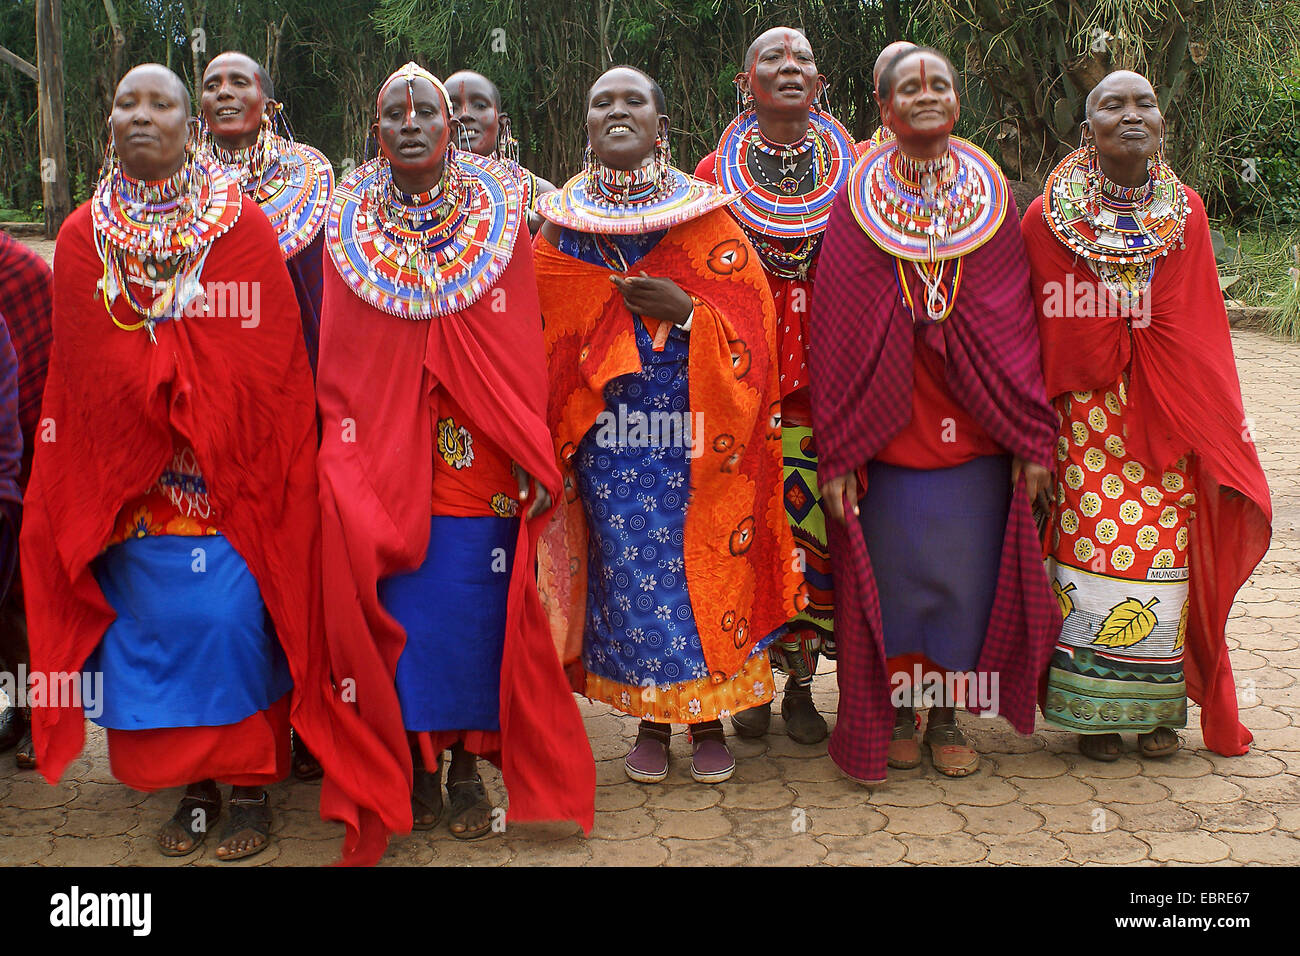 Massai-Gruppe mit traditioneller Kleidung, Kenia, Masai Mara  Stockfotografie - Alamy